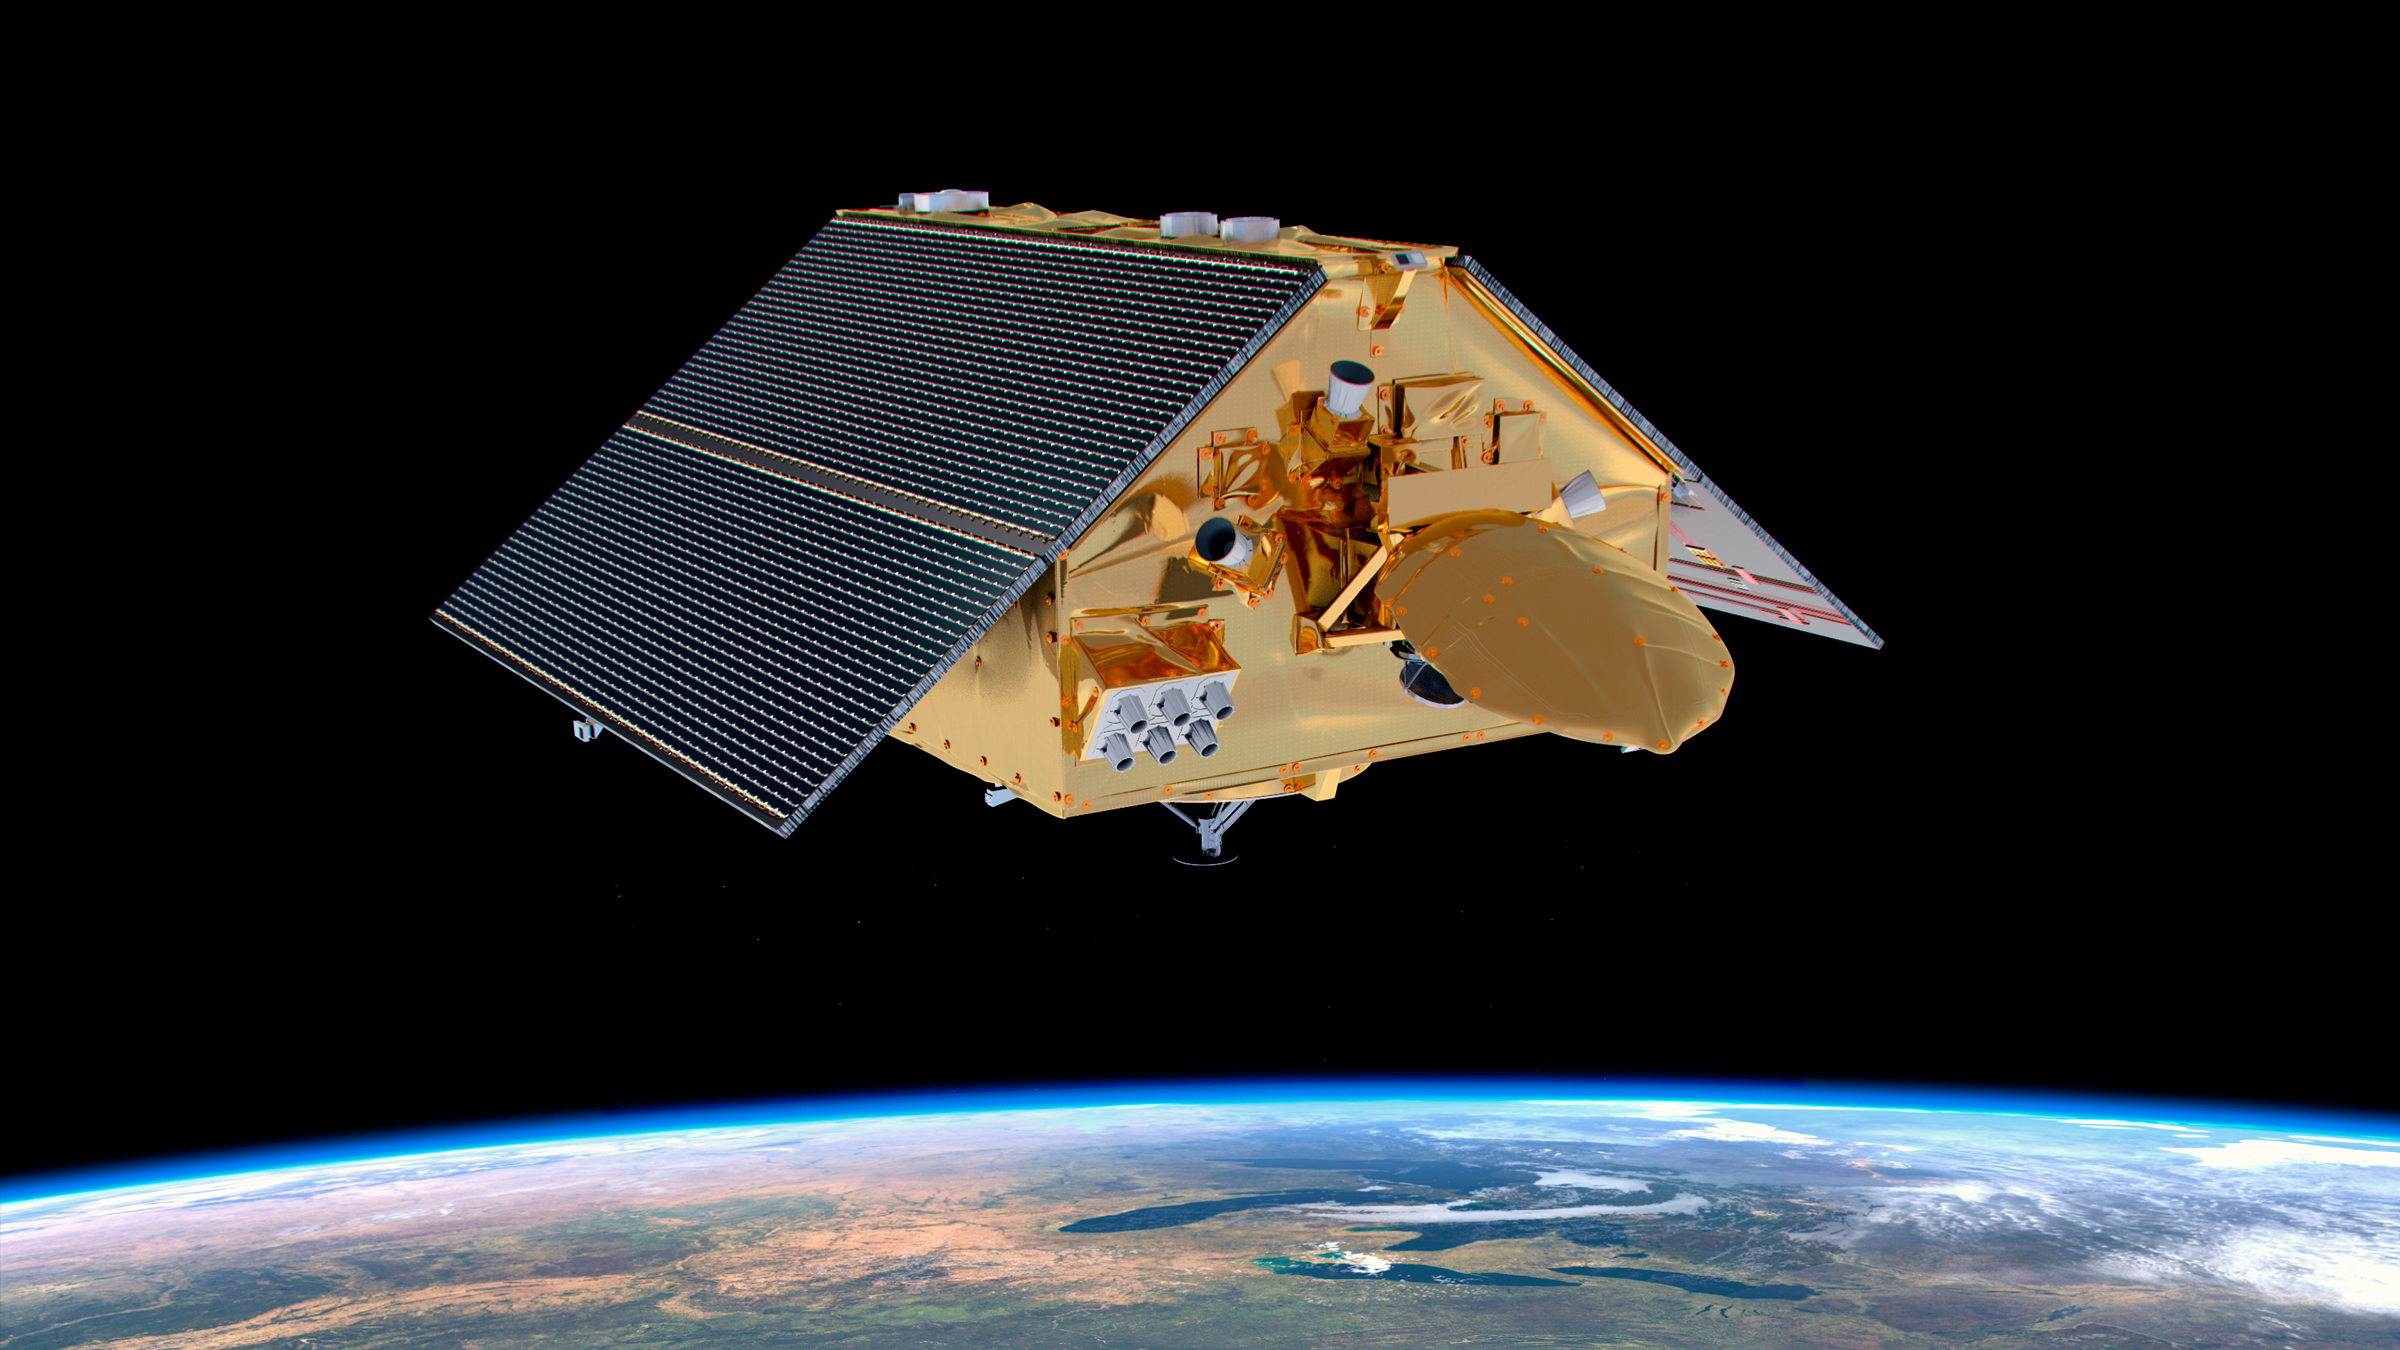 Σε αυτήν την απεικόνιση, ο δορυφόρος Sentinel-6 Michael Freilich μετρά το ύψος του ωκεανού από το διάστημα.